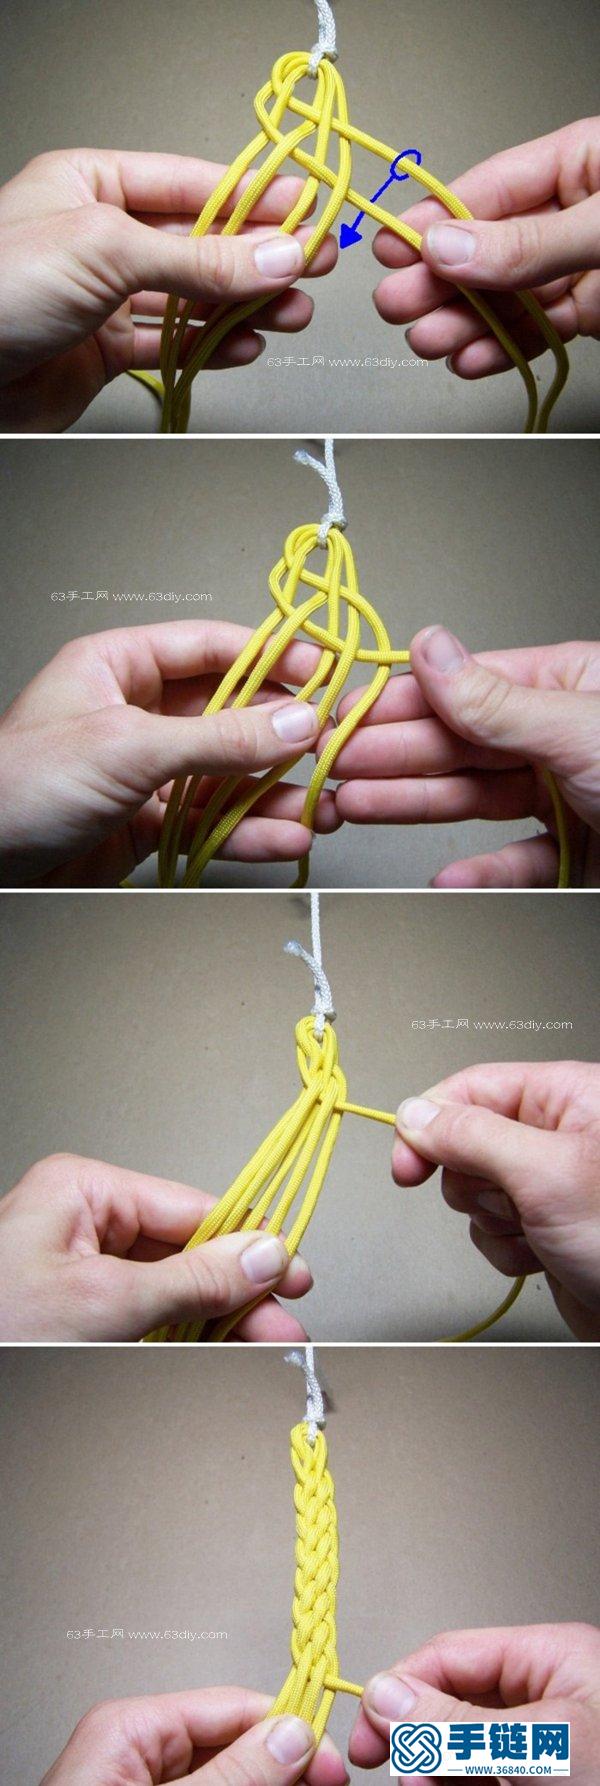 六股绳的编法图解 宽版手绳编织教程